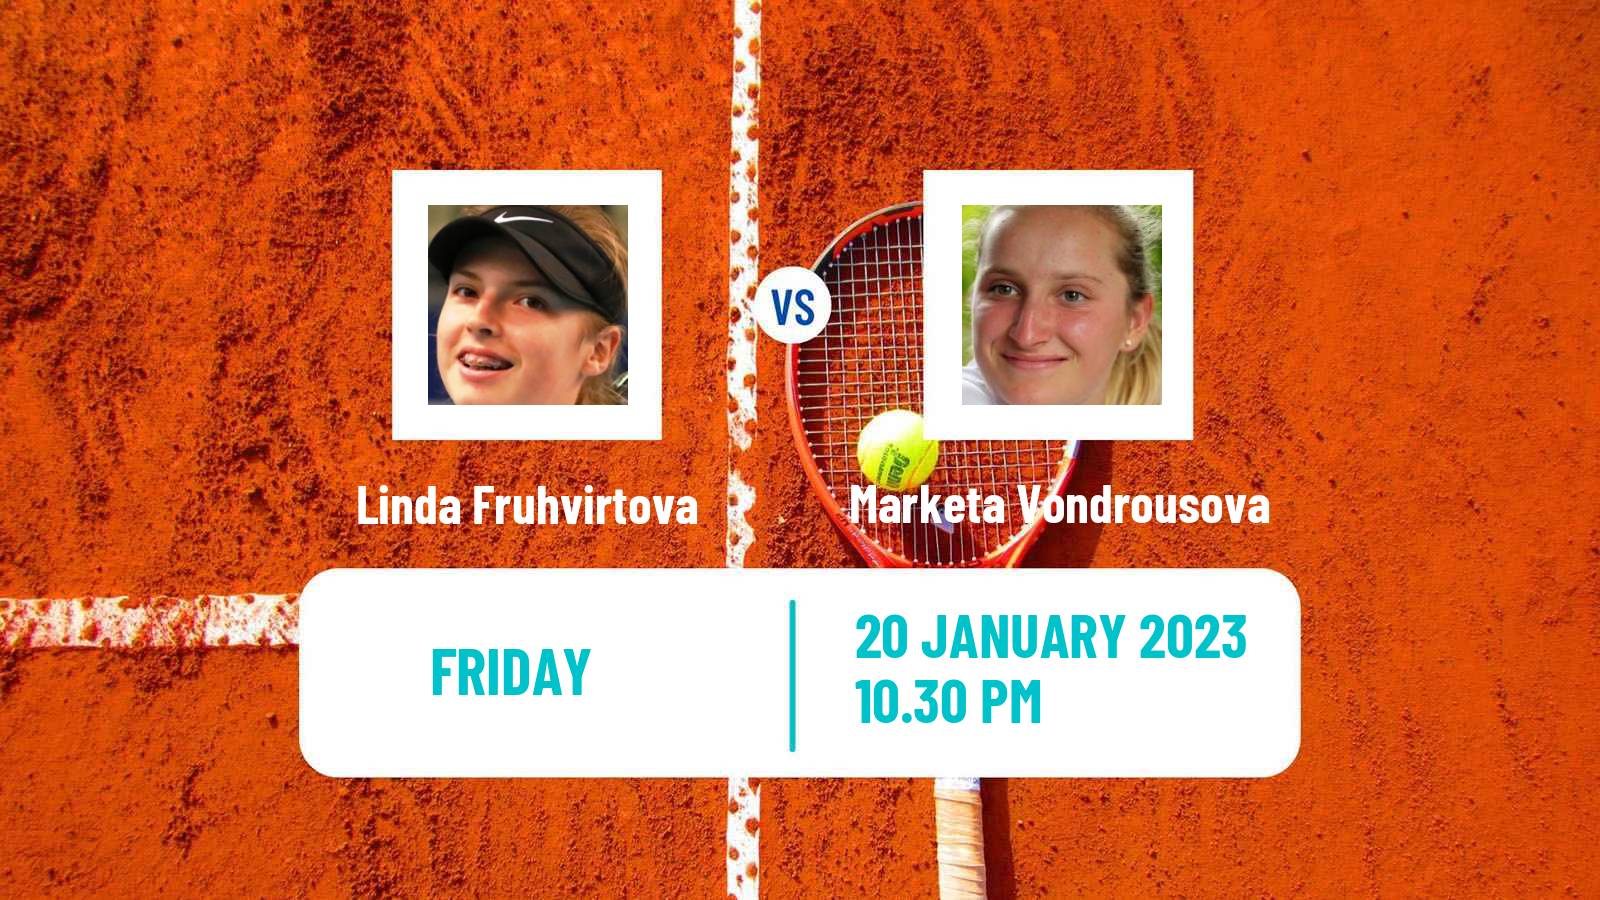 Tennis WTA Australian Open Linda Fruhvirtova - Marketa Vondrousova